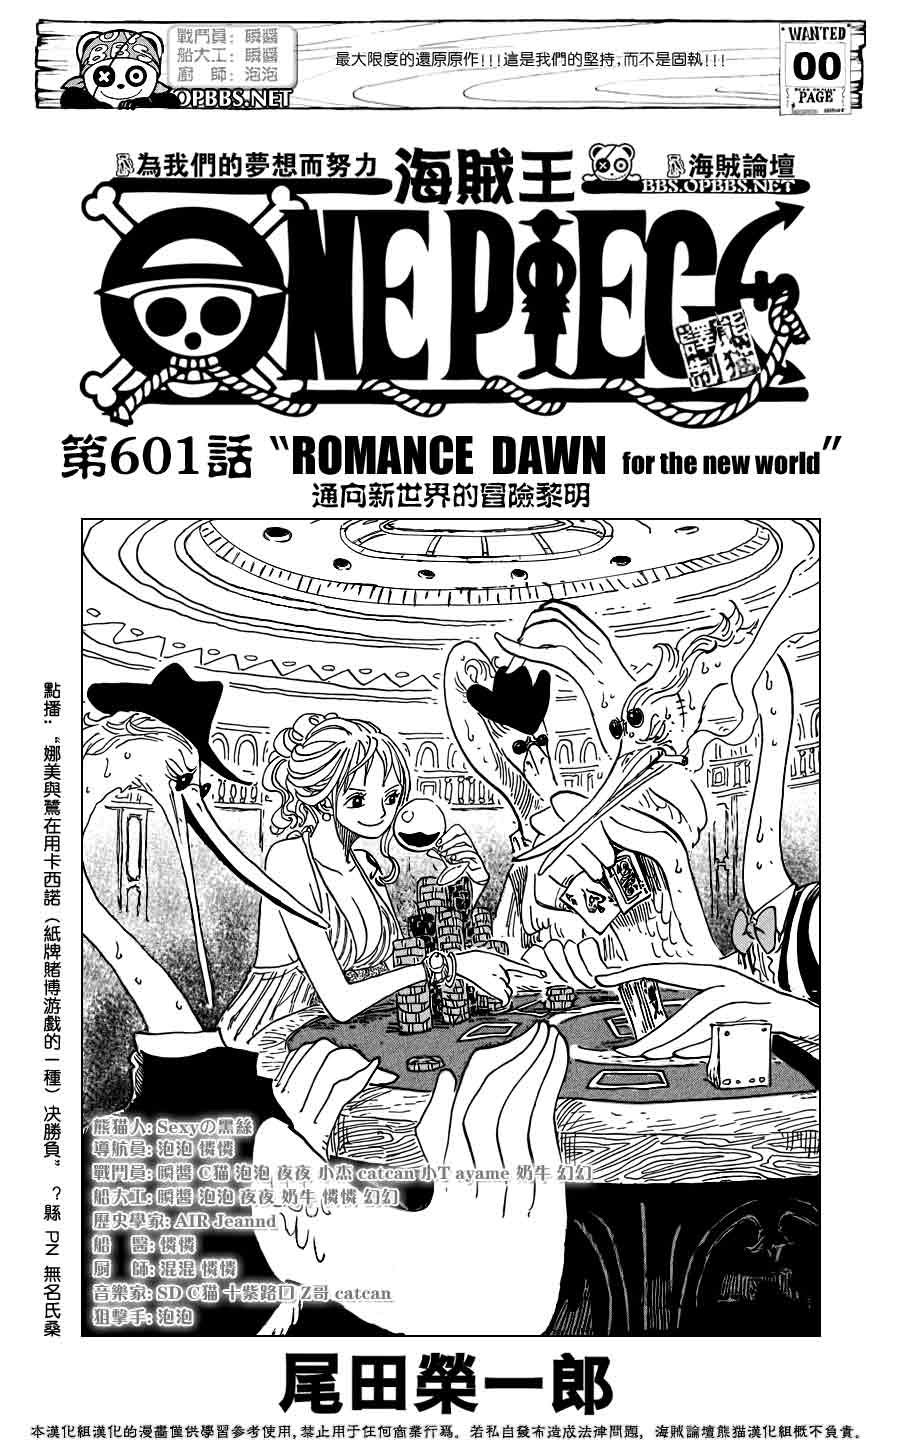 漫画更新 海贼王one Piece 第601话通向新世界的冒险黎明 海贼王 草帽海贼团 飞赞